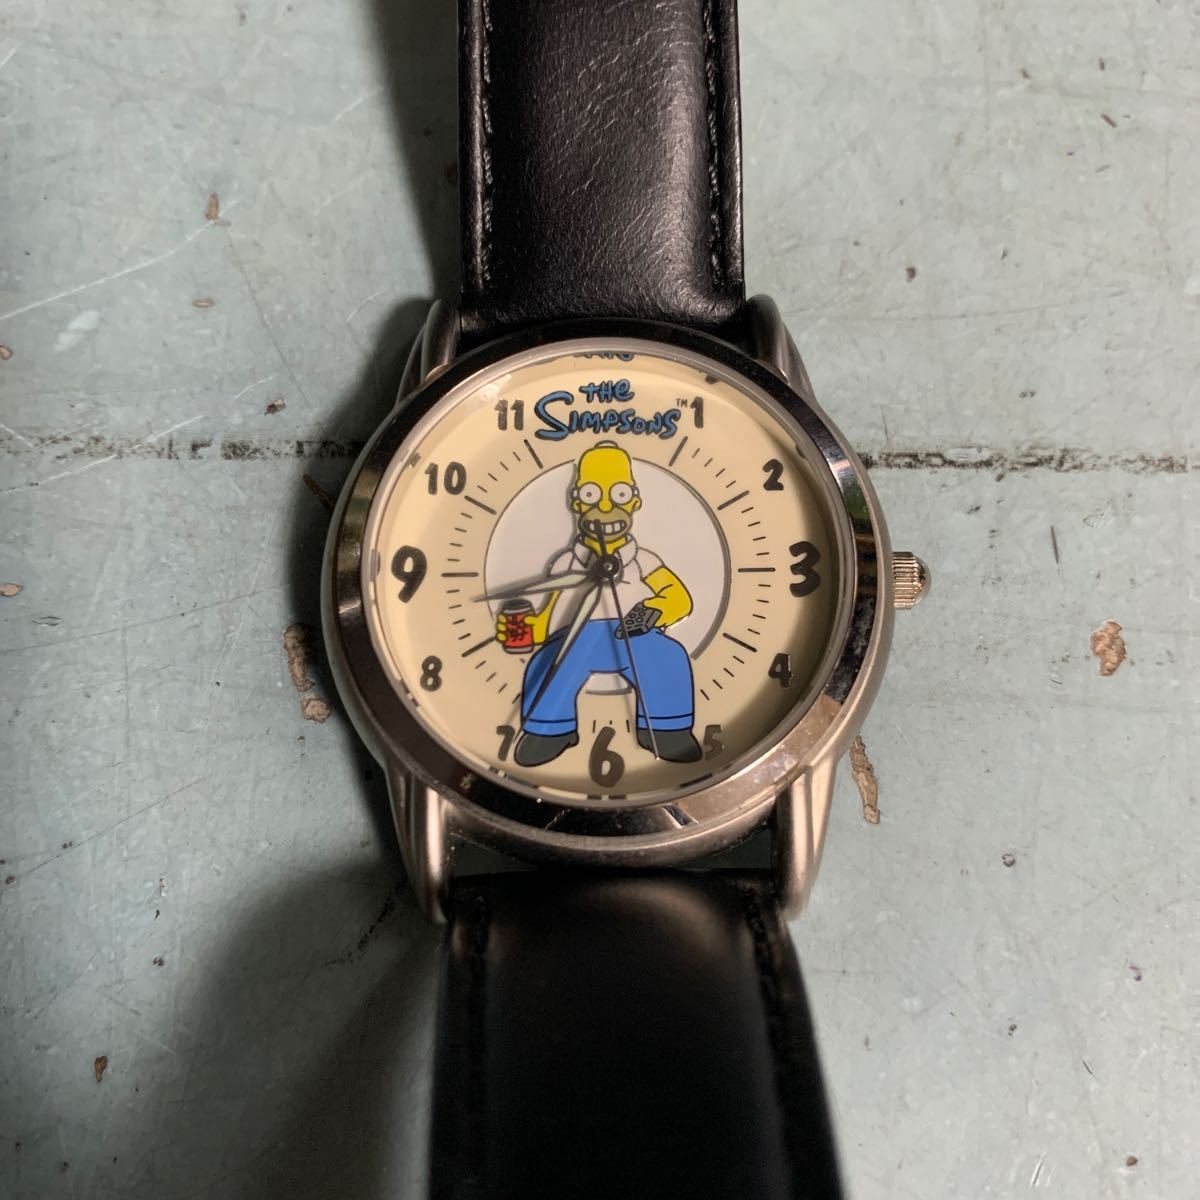  работа товар Simpson z Fossil FOSSIL наручные часы ограниченный выпуск 3000 шт производство ограничение наручные часы 2556 номер /3000 шт средний LI-1657 (8707)